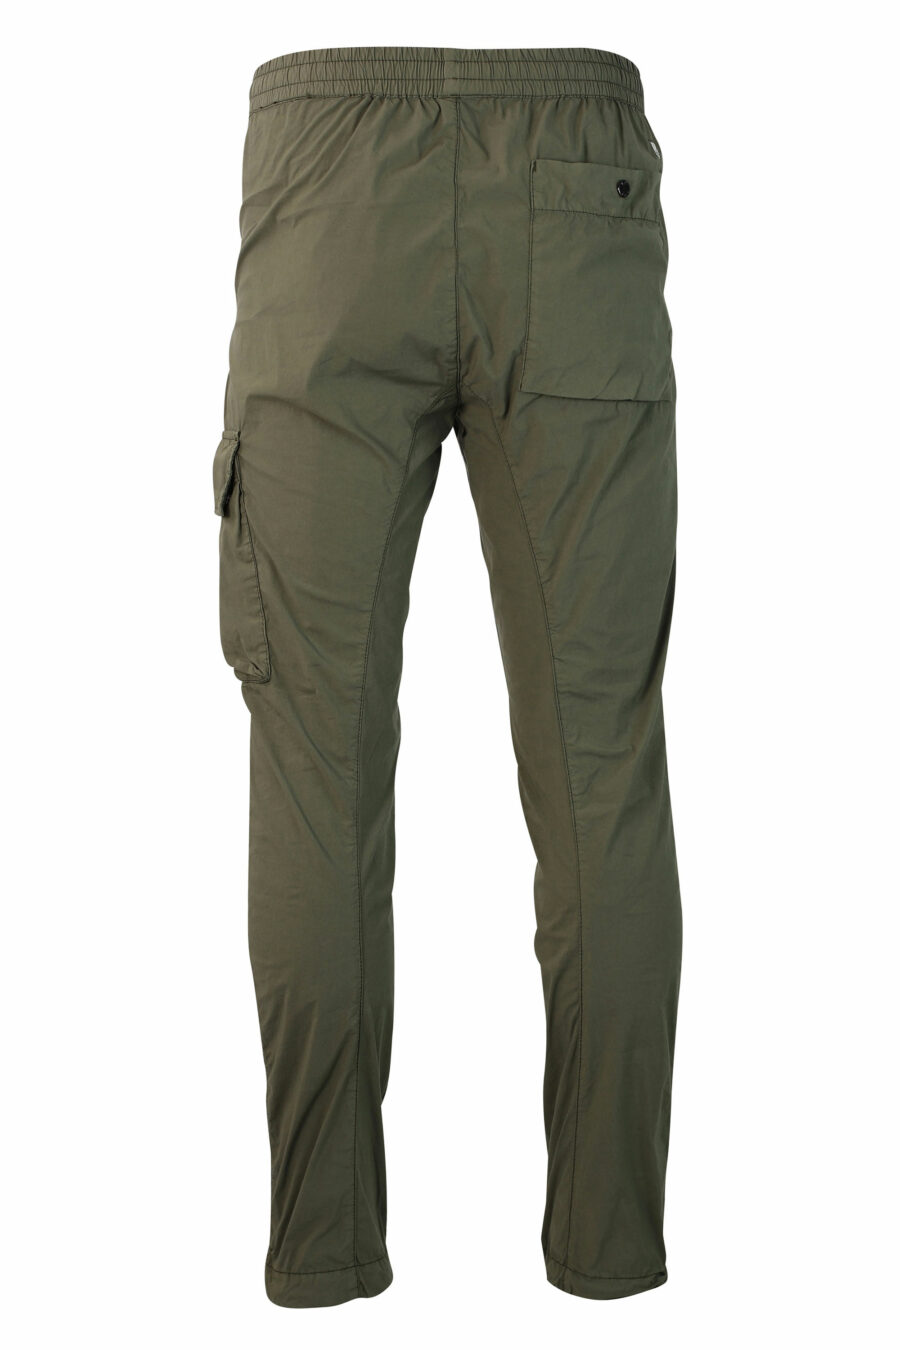 Pantalon militaire vert avec un mini-logo circulaire sur le côté - IMG 9857 1